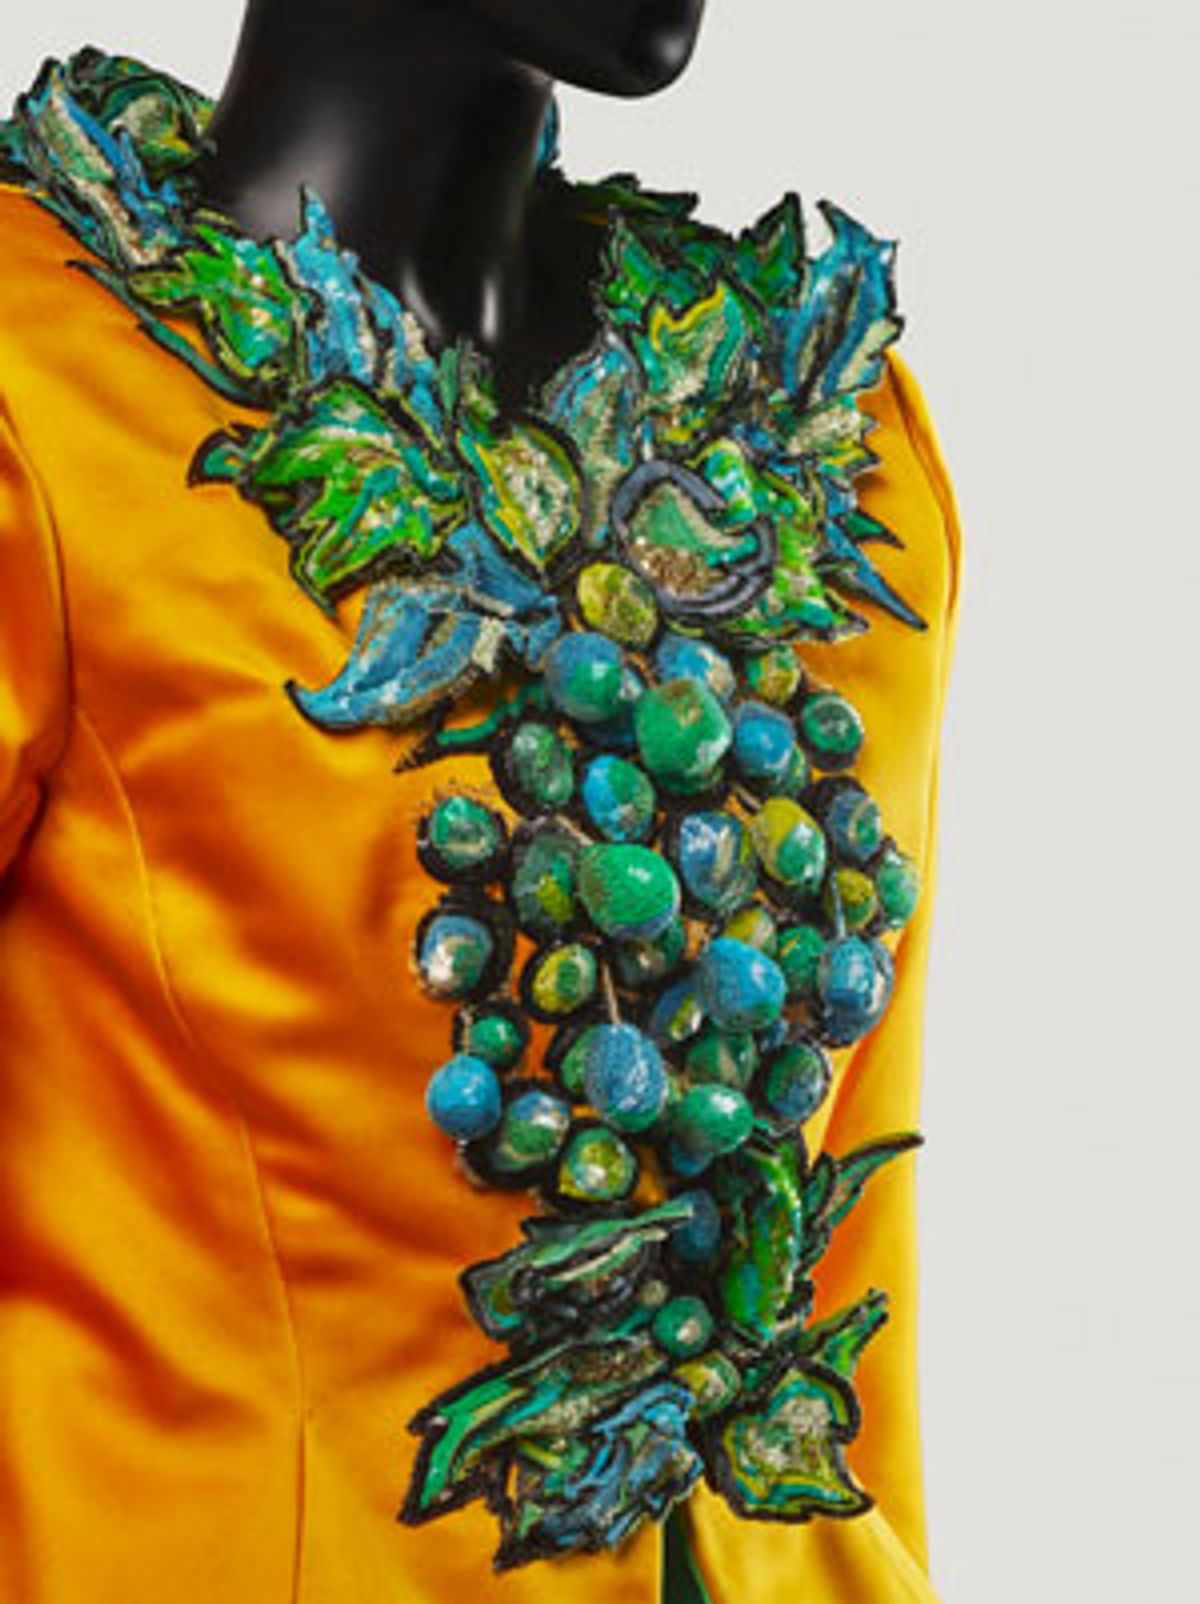 Veste Yves Saint Laurent en satin cuir anis brodée par la Maison Lesage et nommée « Hommage à Bonnard ». Courtesy Artcurial